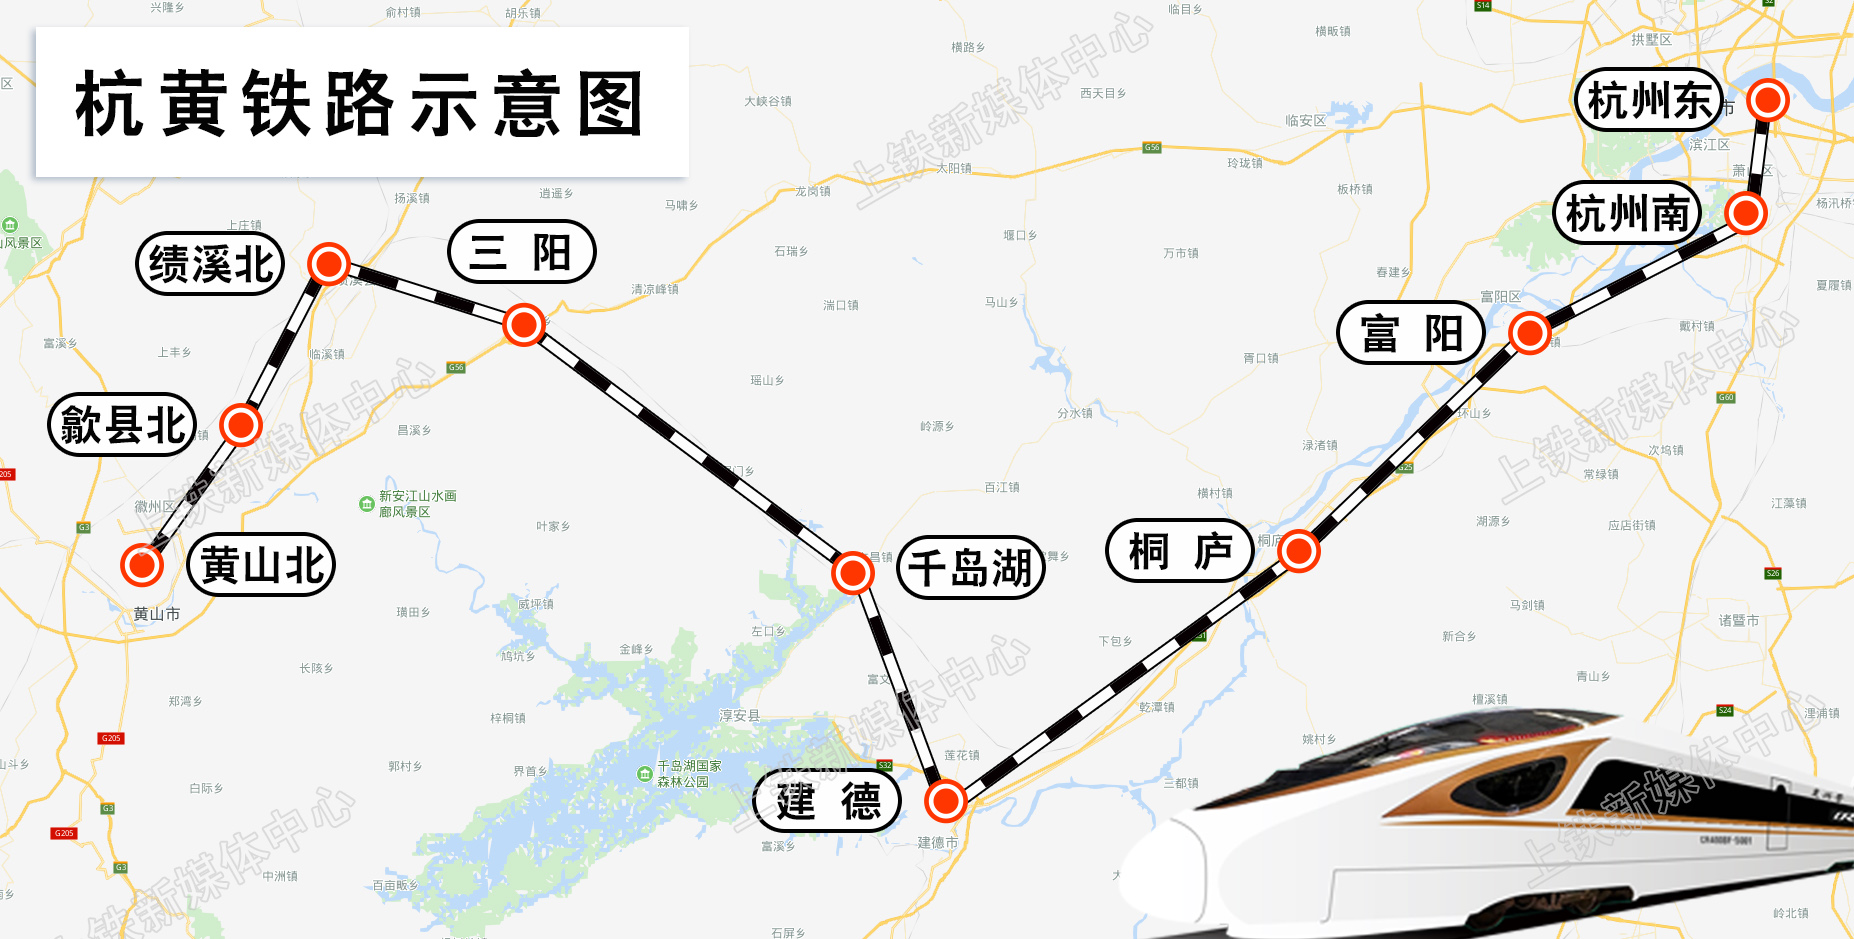 杭黄铁路9月1日送电铁路部门提醒民众遵守相关规定防止发生触电事故